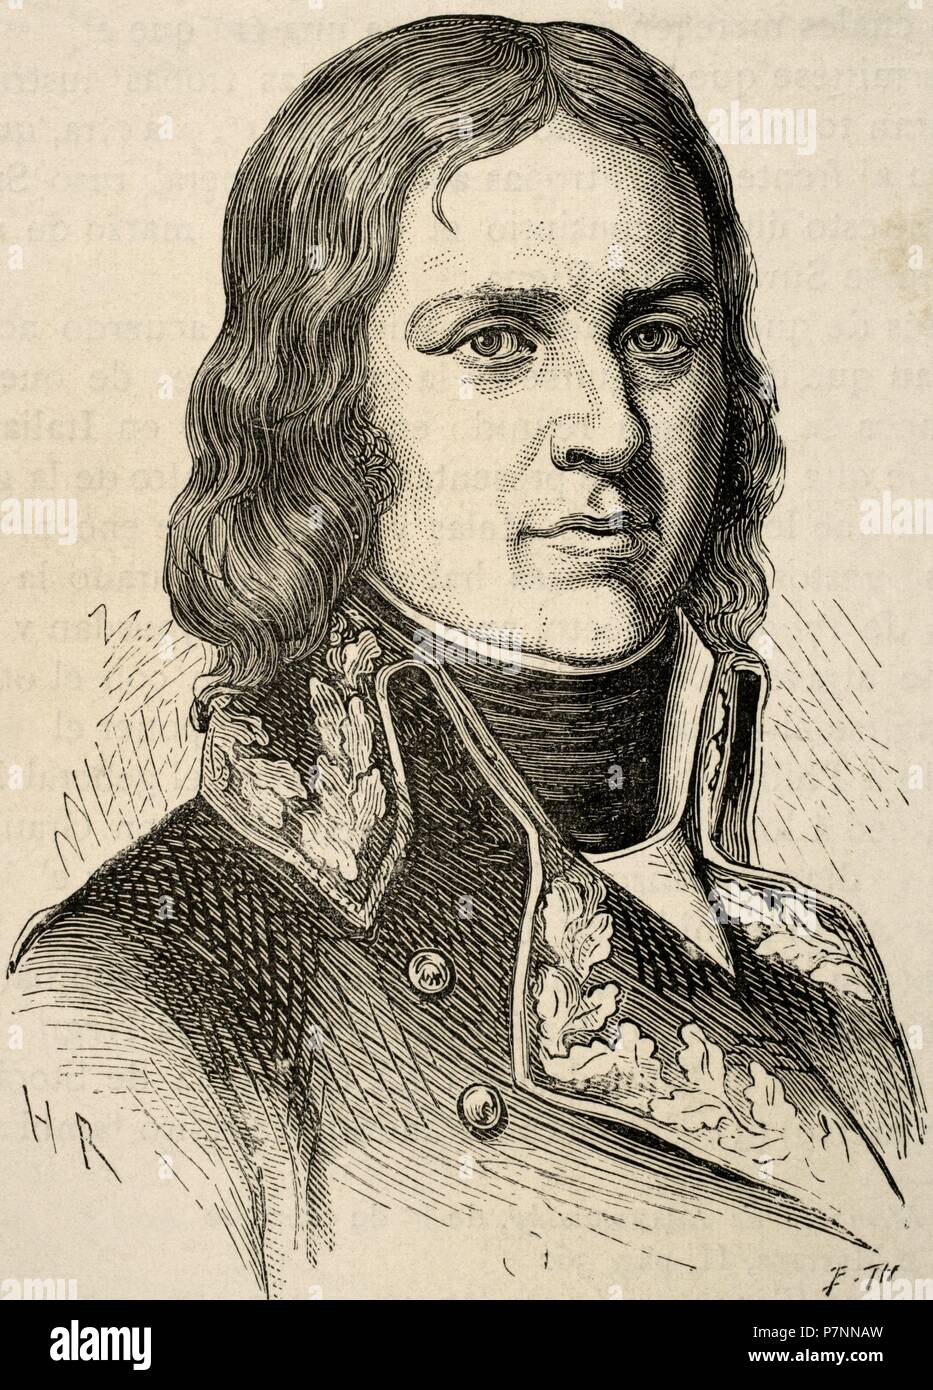 Jean Etienne Championnet (1762-1800). Militärische und französischer Politiker. Porträt. Kupferstich von E. Thiers. "Historia de Francia", 1881. Stockfoto